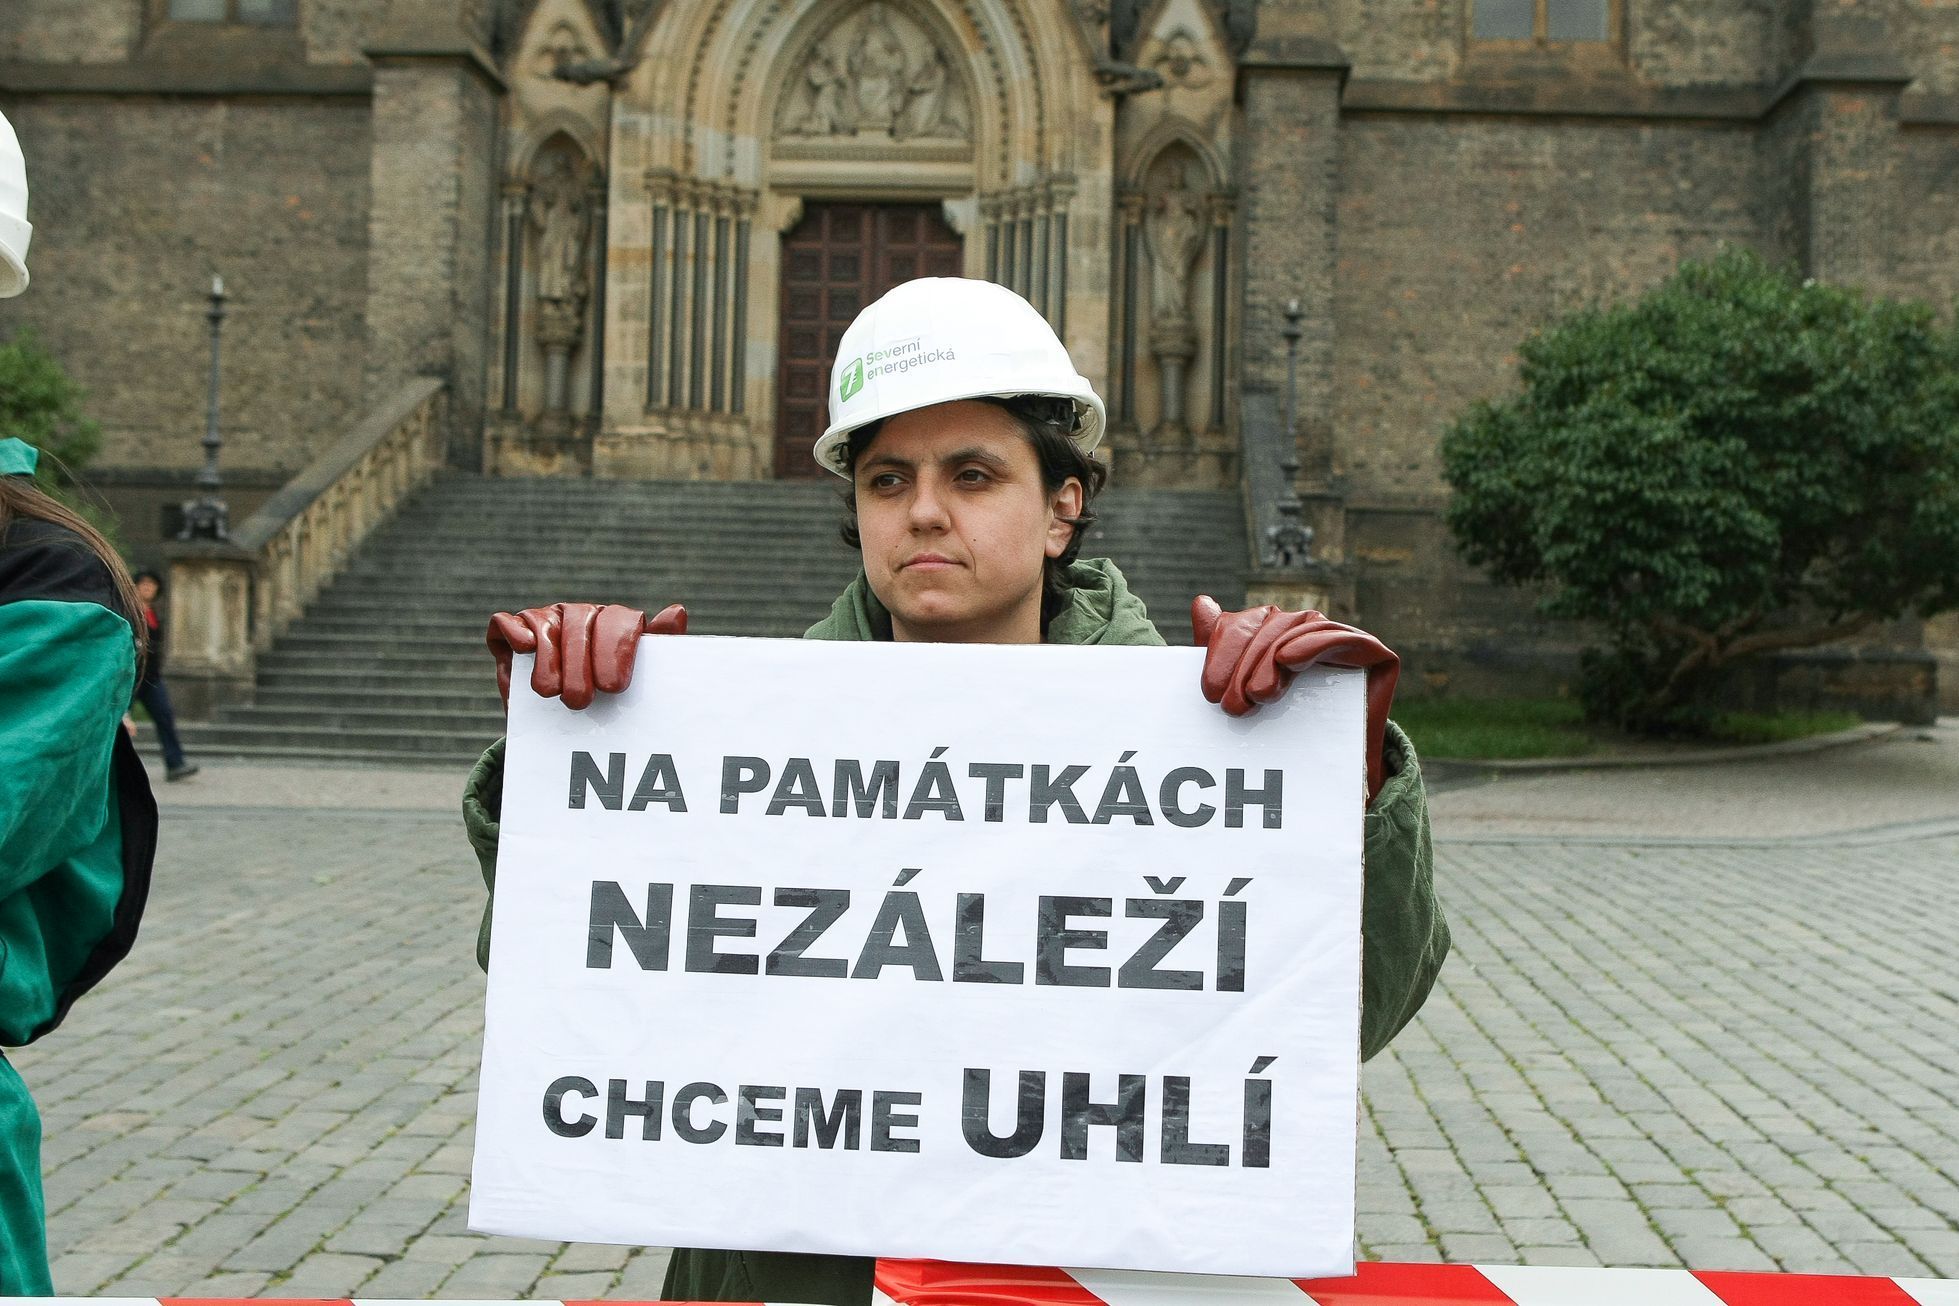 Limity jsme my - happening proti prolomení těžebních limitů - Praha